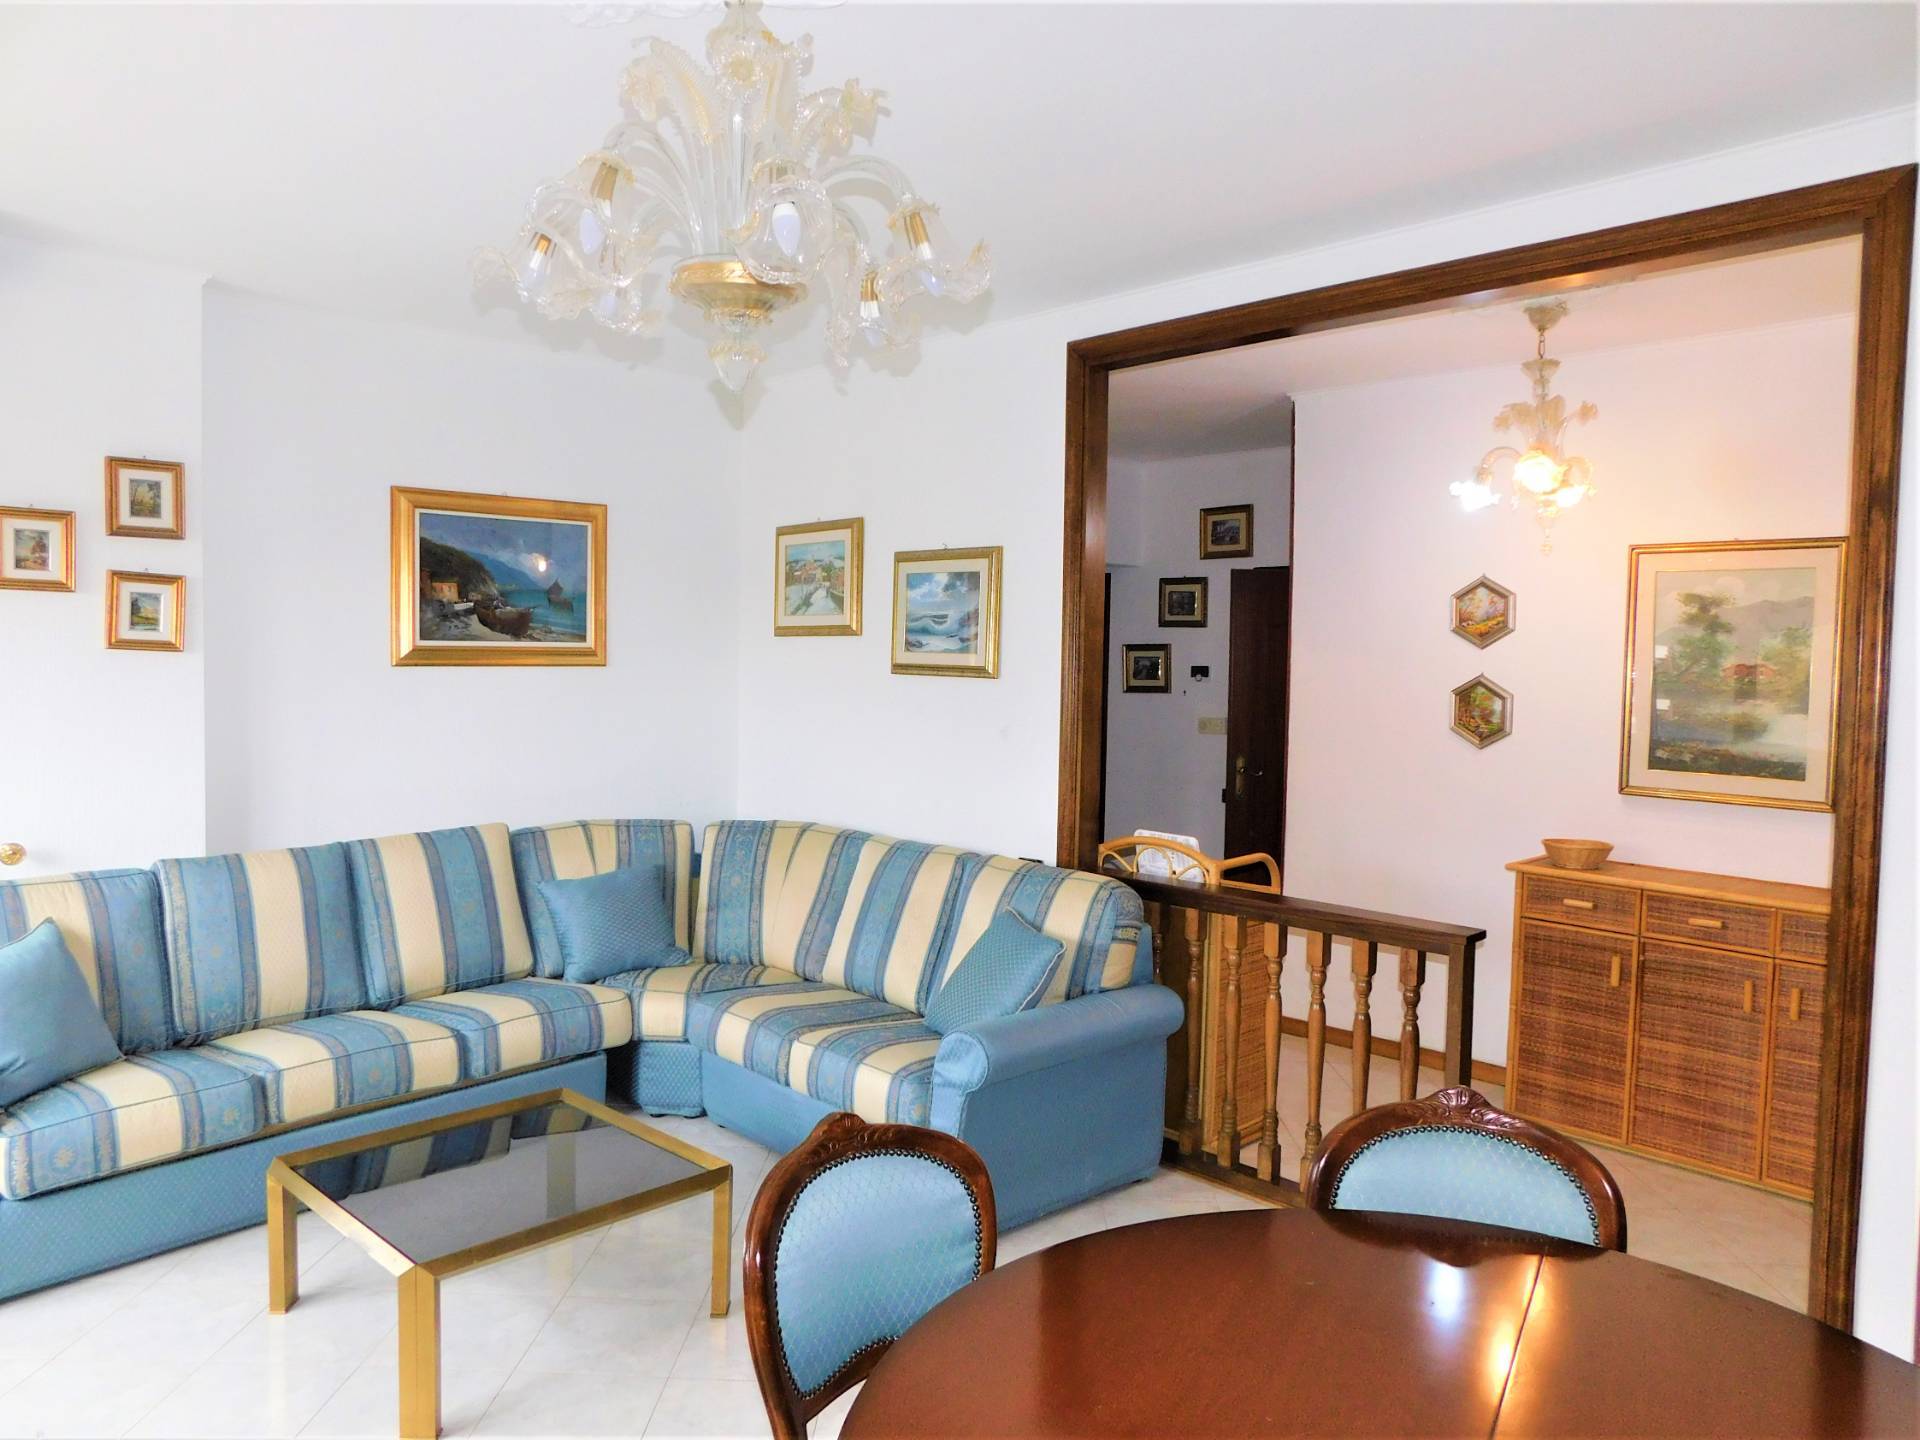 Appartamento in vendita a Oregina-granarolo, Genova (GE)